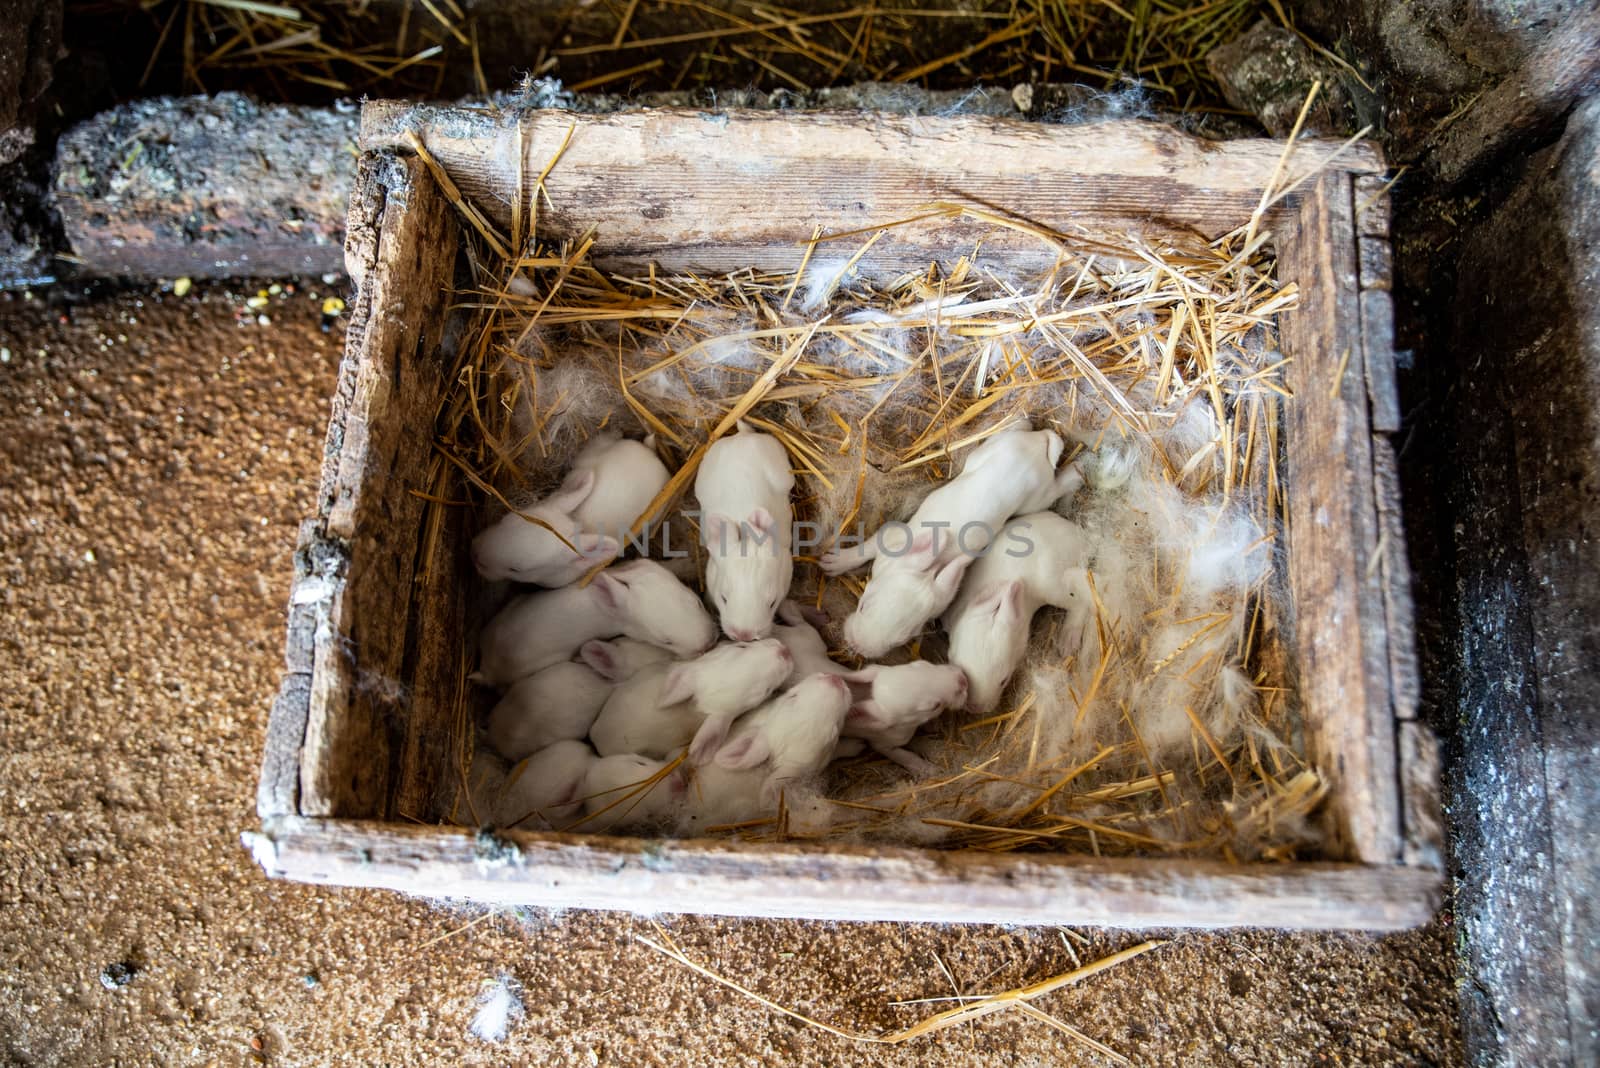 newborn bunnies in the nest